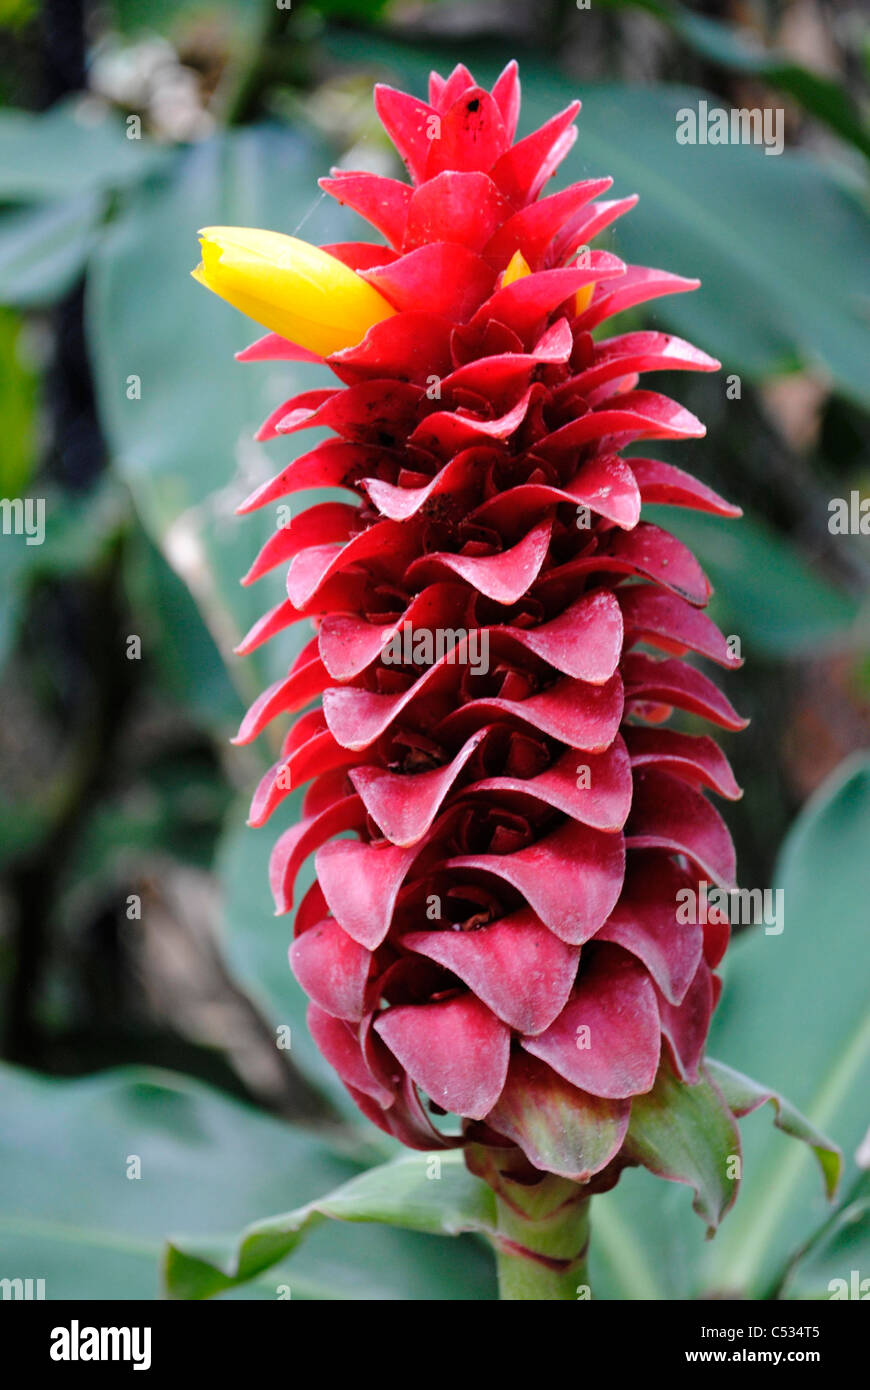 Spiral Ginger Latin name Costus barbatus flower Stock Photo